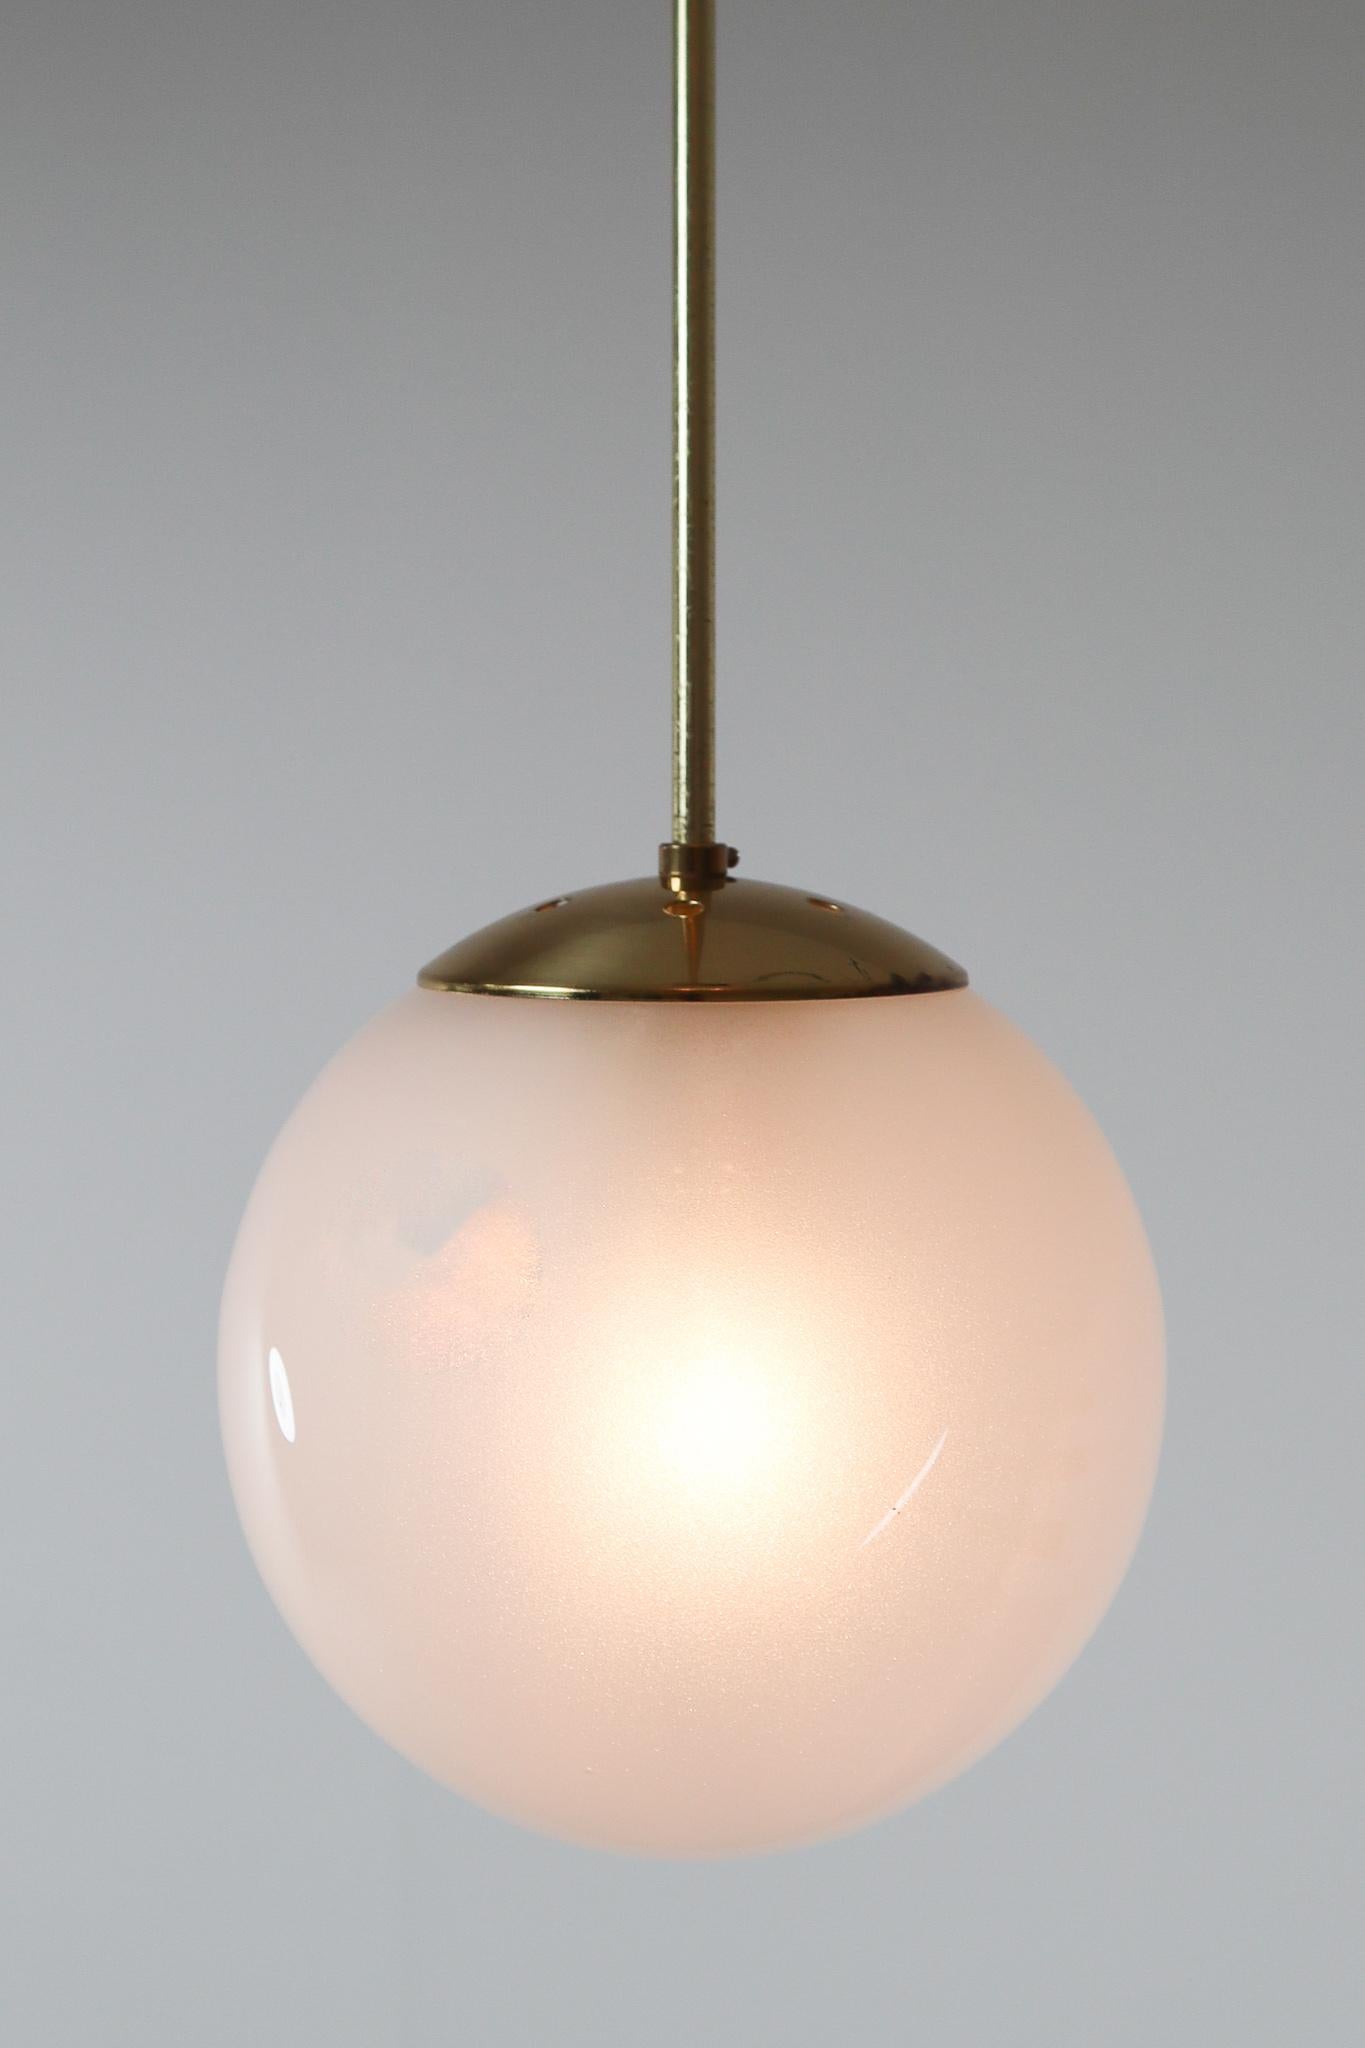 Late 20th Century Brass Pendant with a Pearl-White Hand Blown Globe by Preciosa Kamenický Šenov